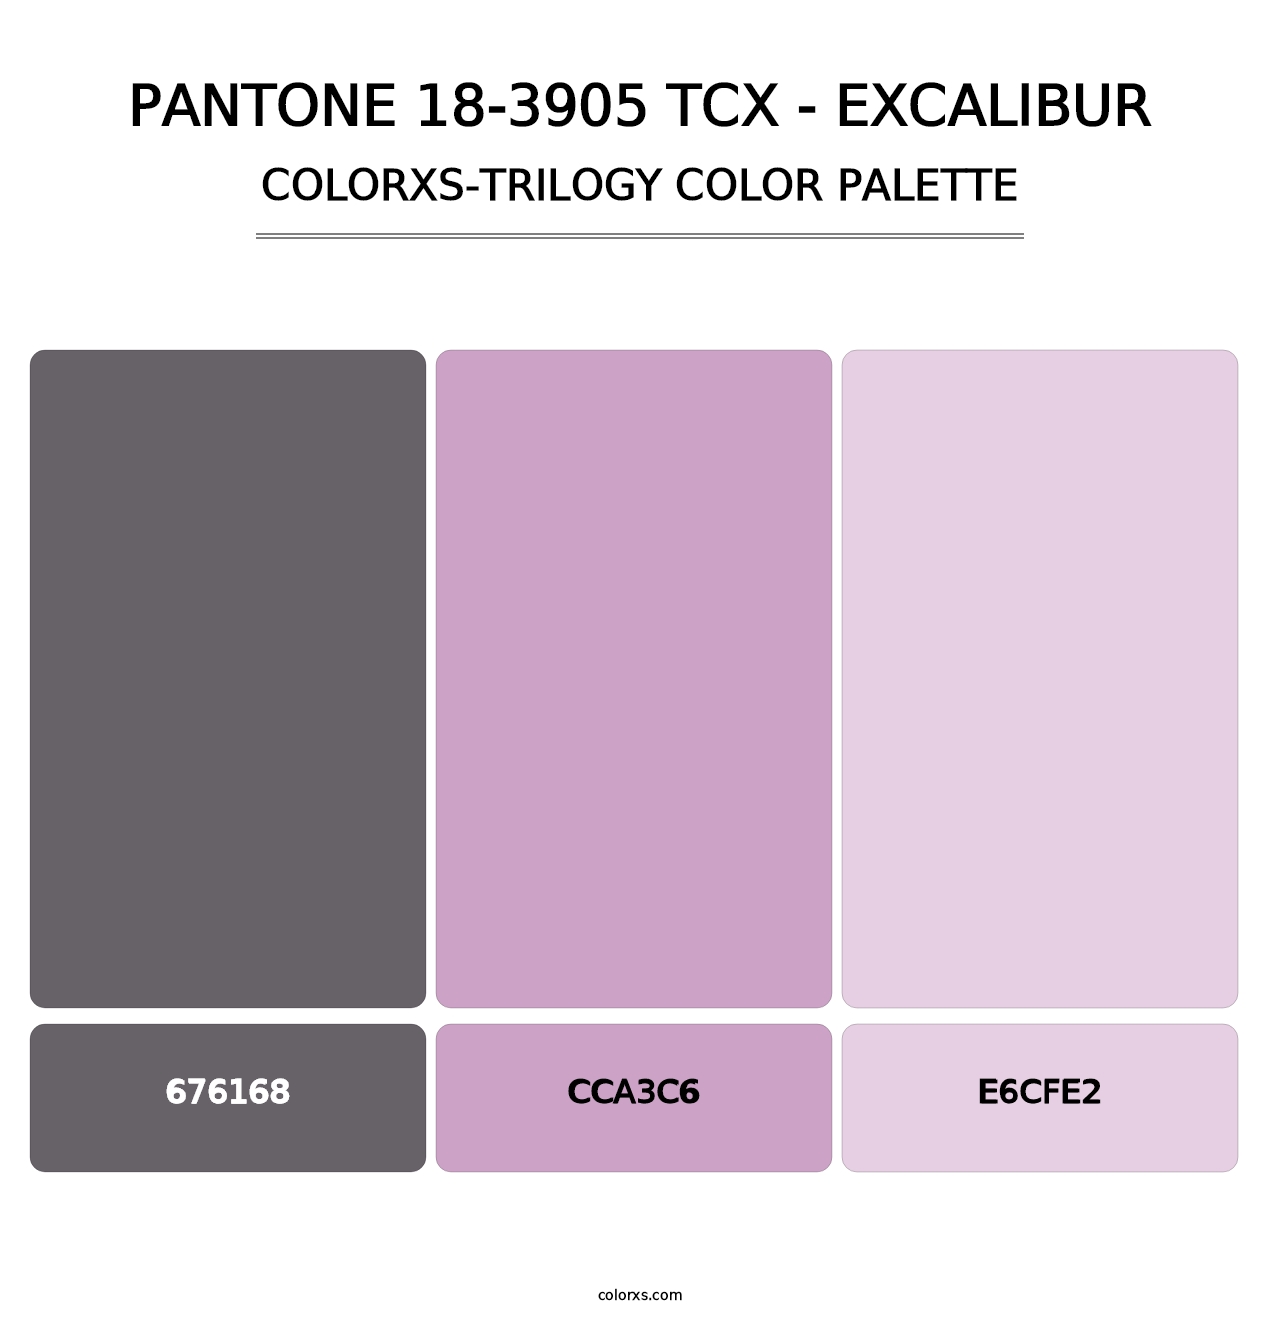 PANTONE 18-3905 TCX - Excalibur - Colorxs Trilogy Palette